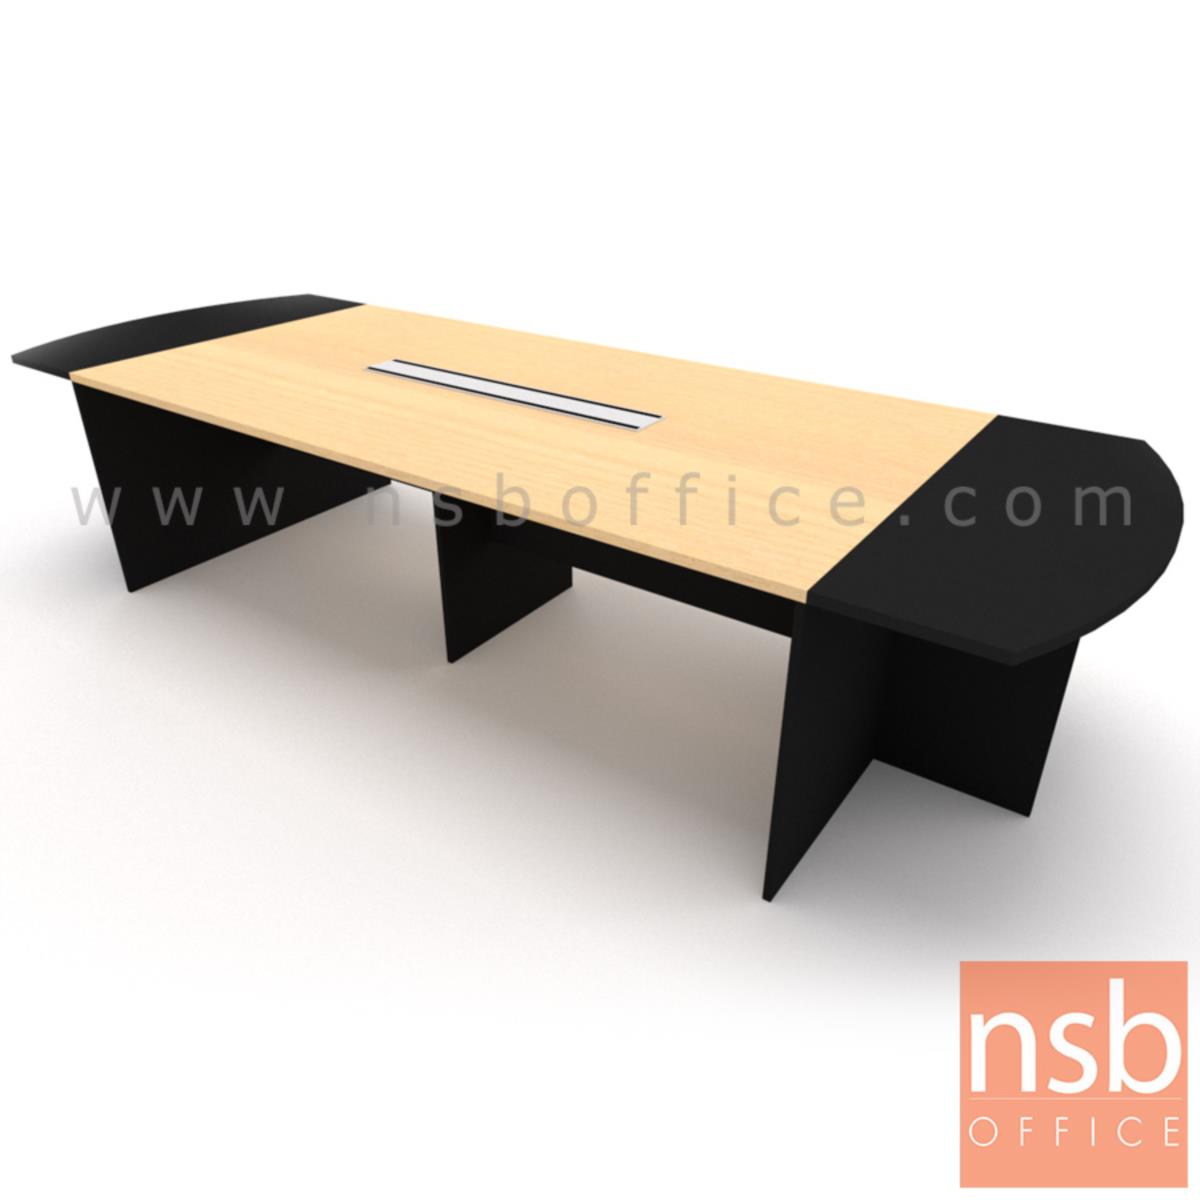 โต๊ะประชุมทรงเหลี่ยมหัวโค้ง ไม้ล้วน รุ่น Allisyn (อัลลิซิน) ขนาด 360W*120D cm. พร้อมป็อบอัพหน้าโต๊ะ